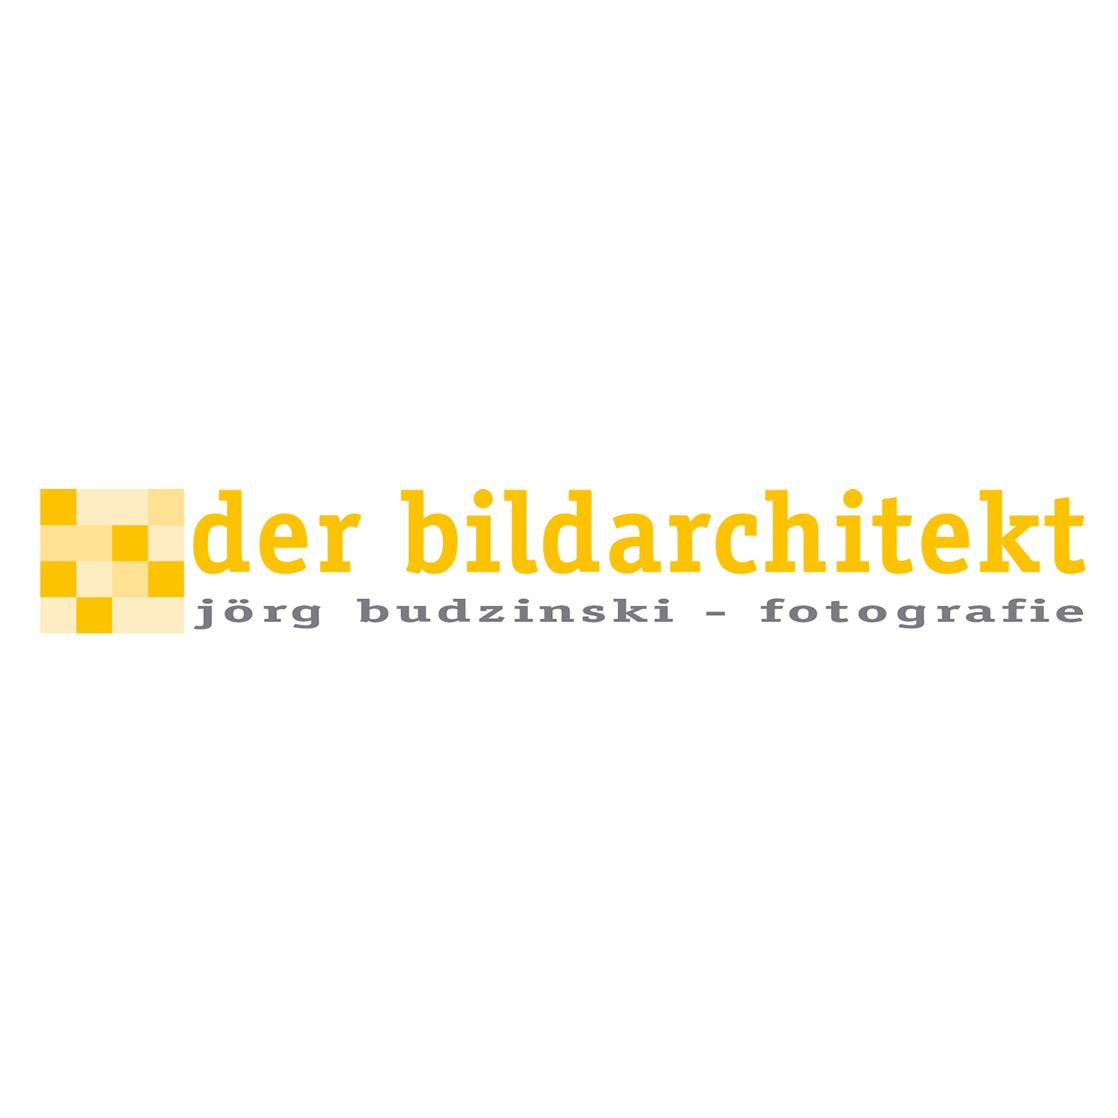 der bildarchitekt - fotografie - jörg budzinski in Altenberge in Westfalen - Logo